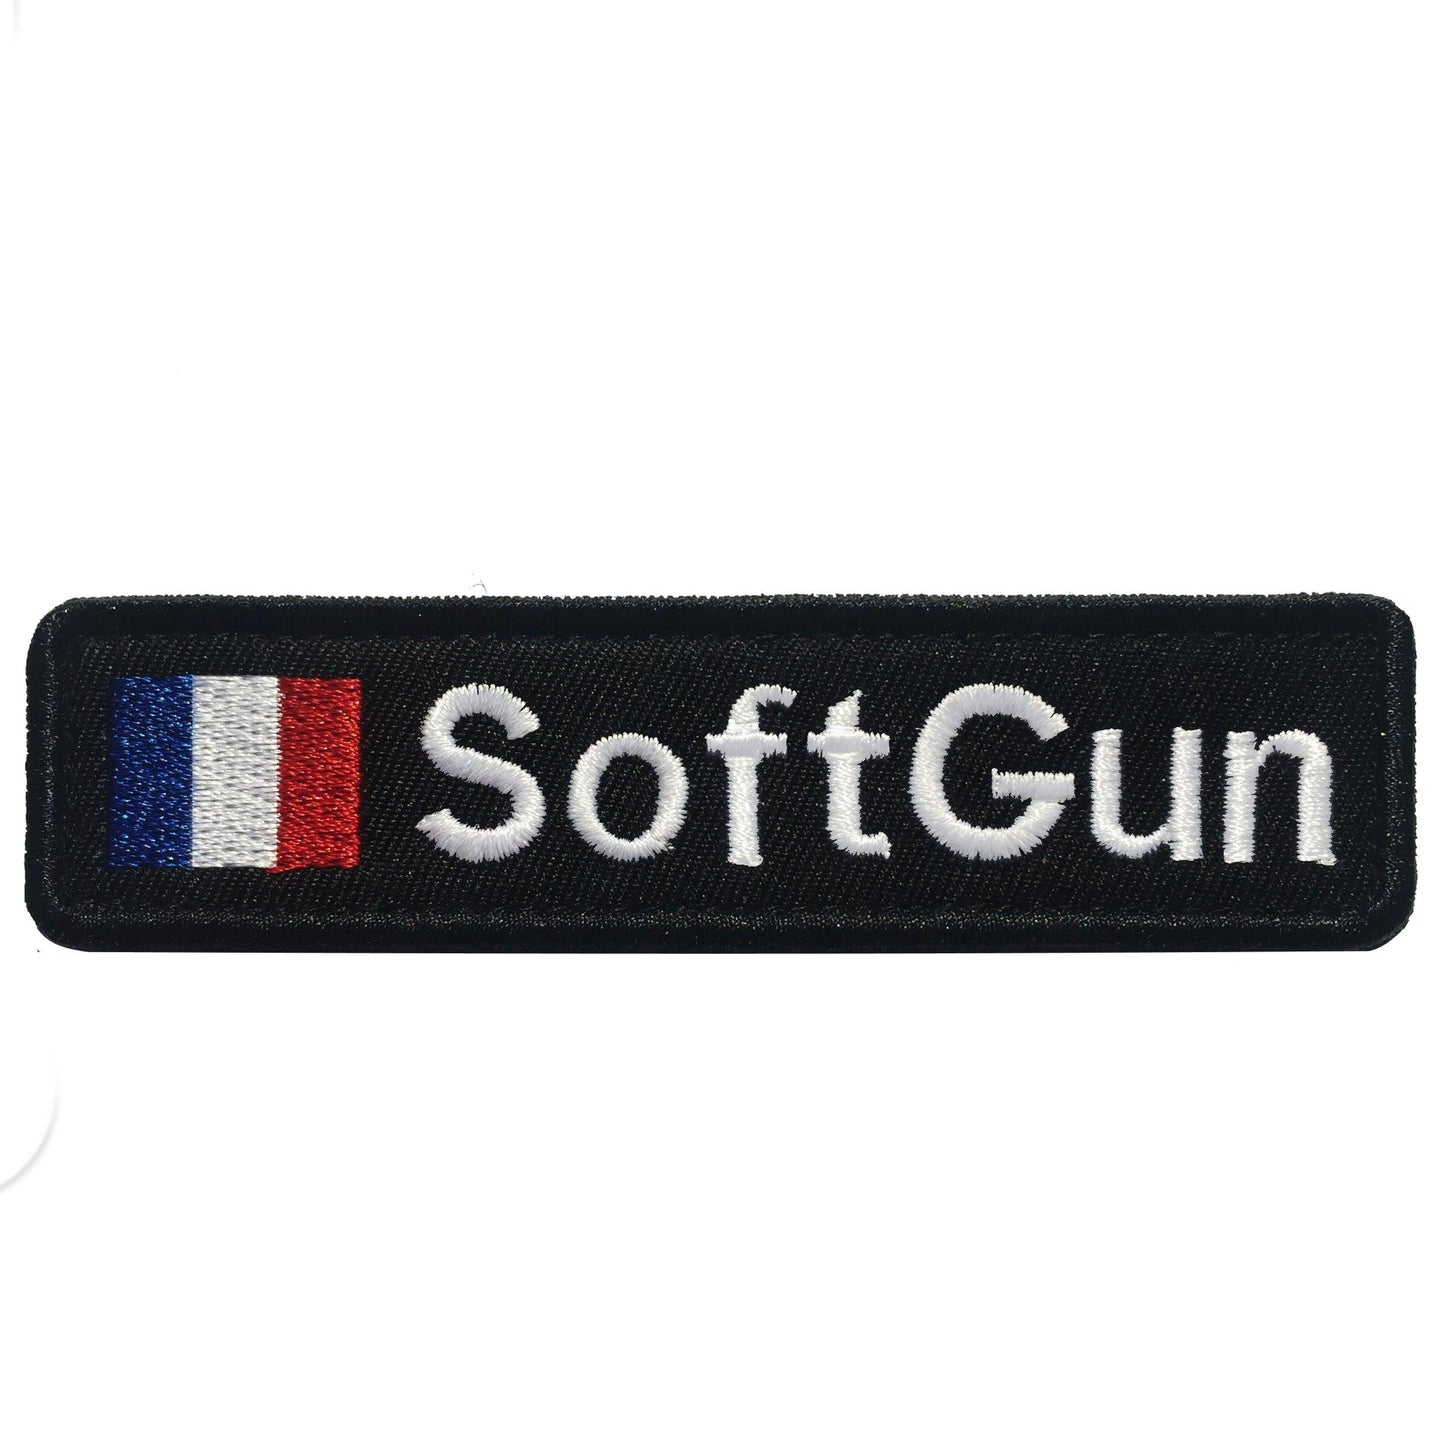 Patch brodé personnalisé Airsoft avec drapeau Francais patch militaire patch tactique brodé personnalisable Airsoft